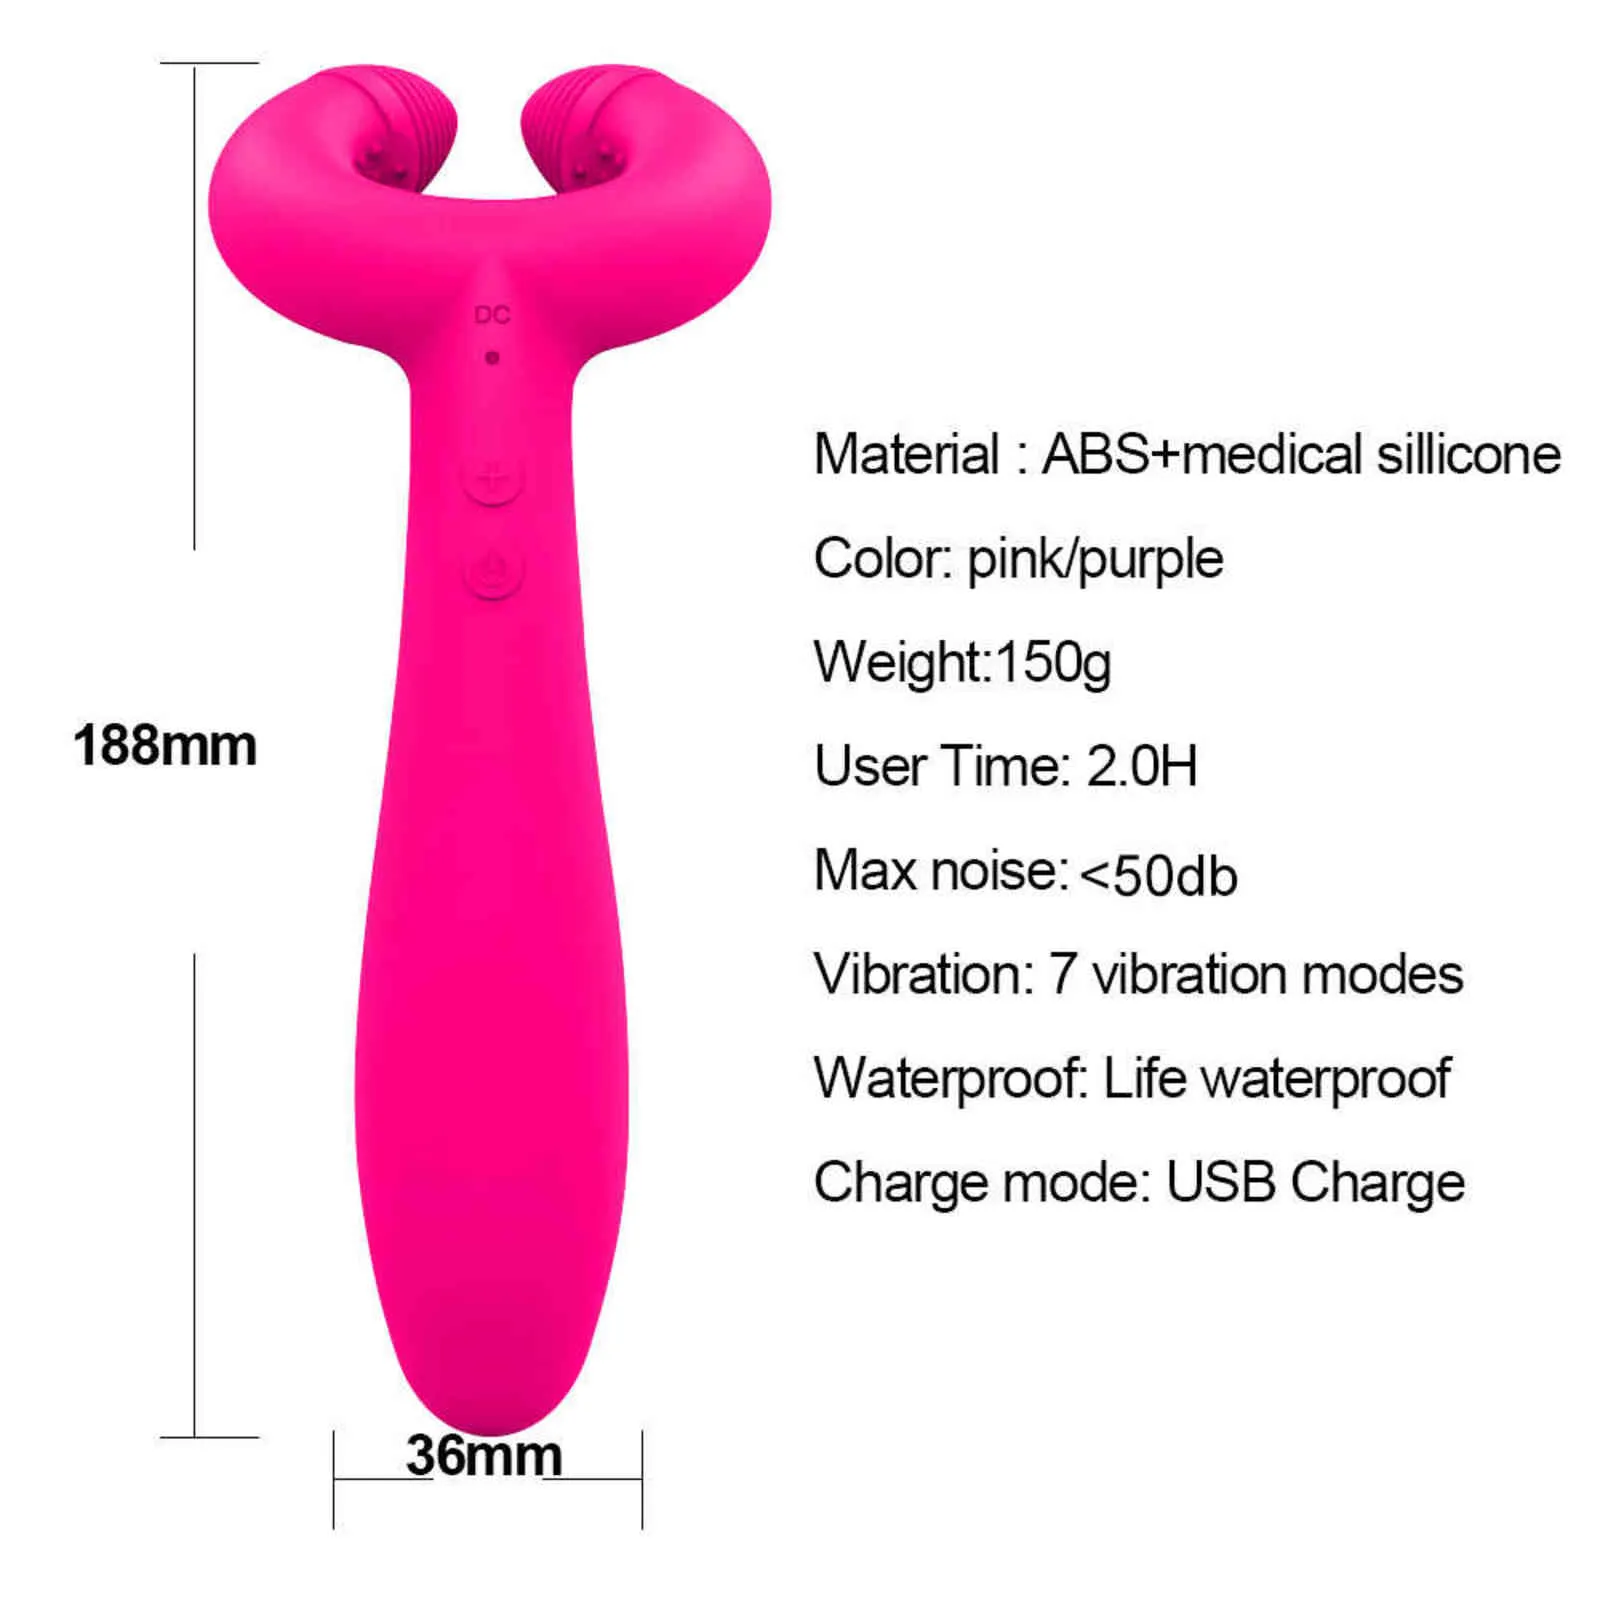 Nxy vibrators dubbele penetratie 3 motoren dildo vibrator sex speelgoed voor vrouwen